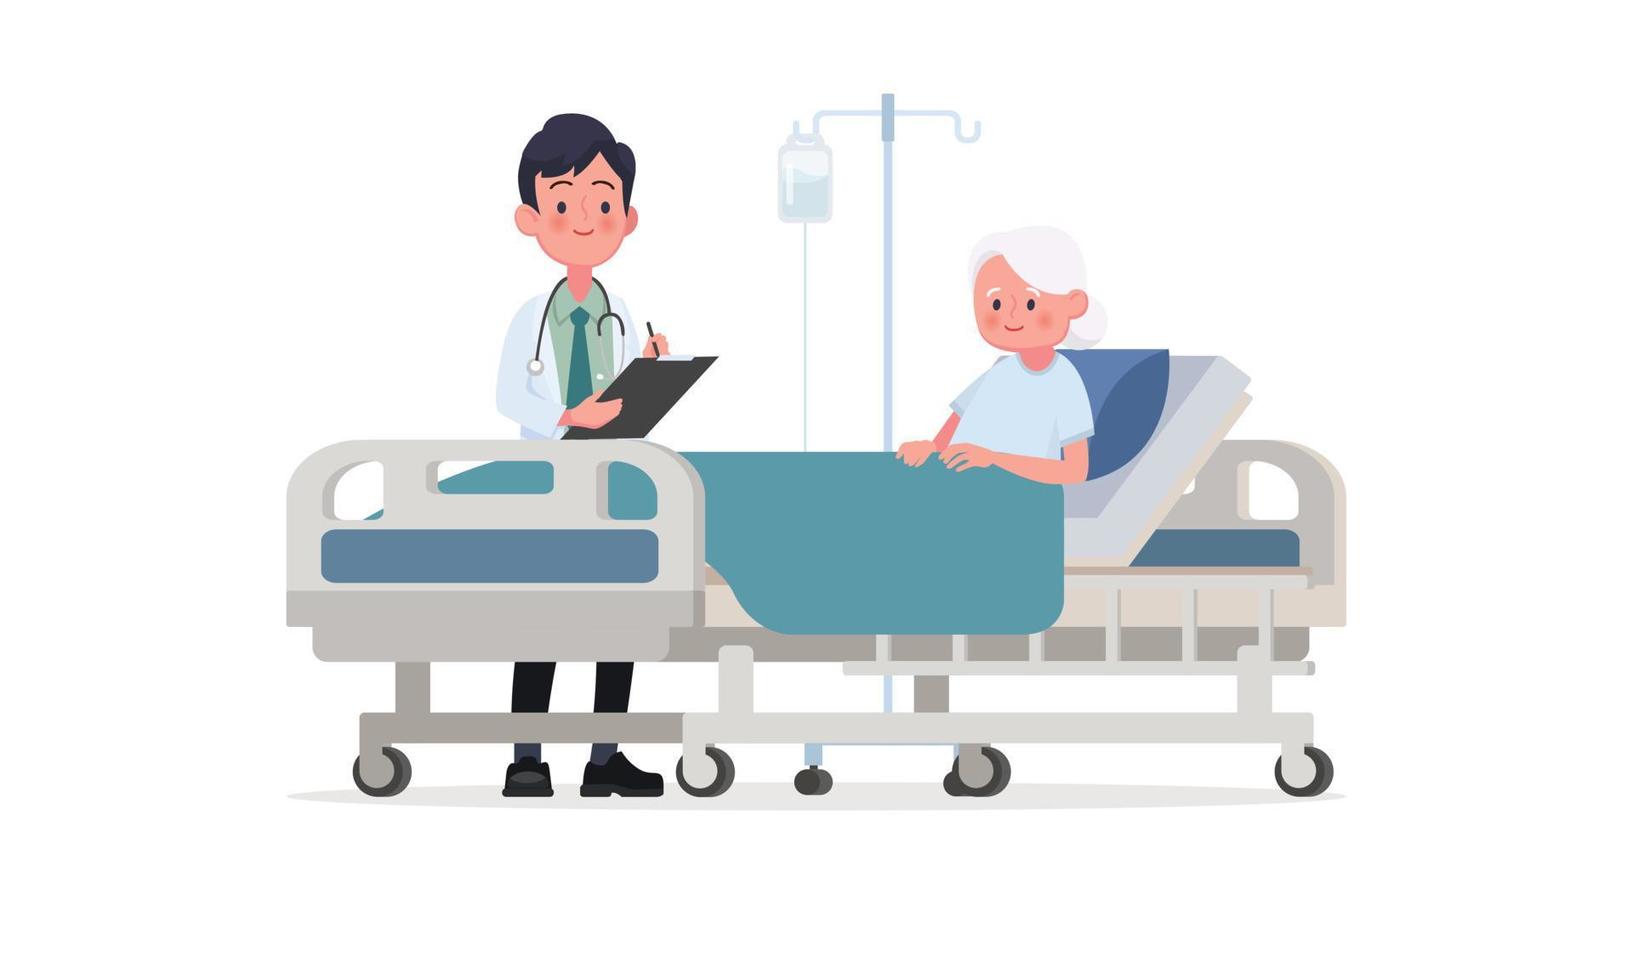 visite du médecin dans le service du patient. une personne malade est dans un lit médicalisé sous perfusion. illustration vectorielle dans un style plat vecteur